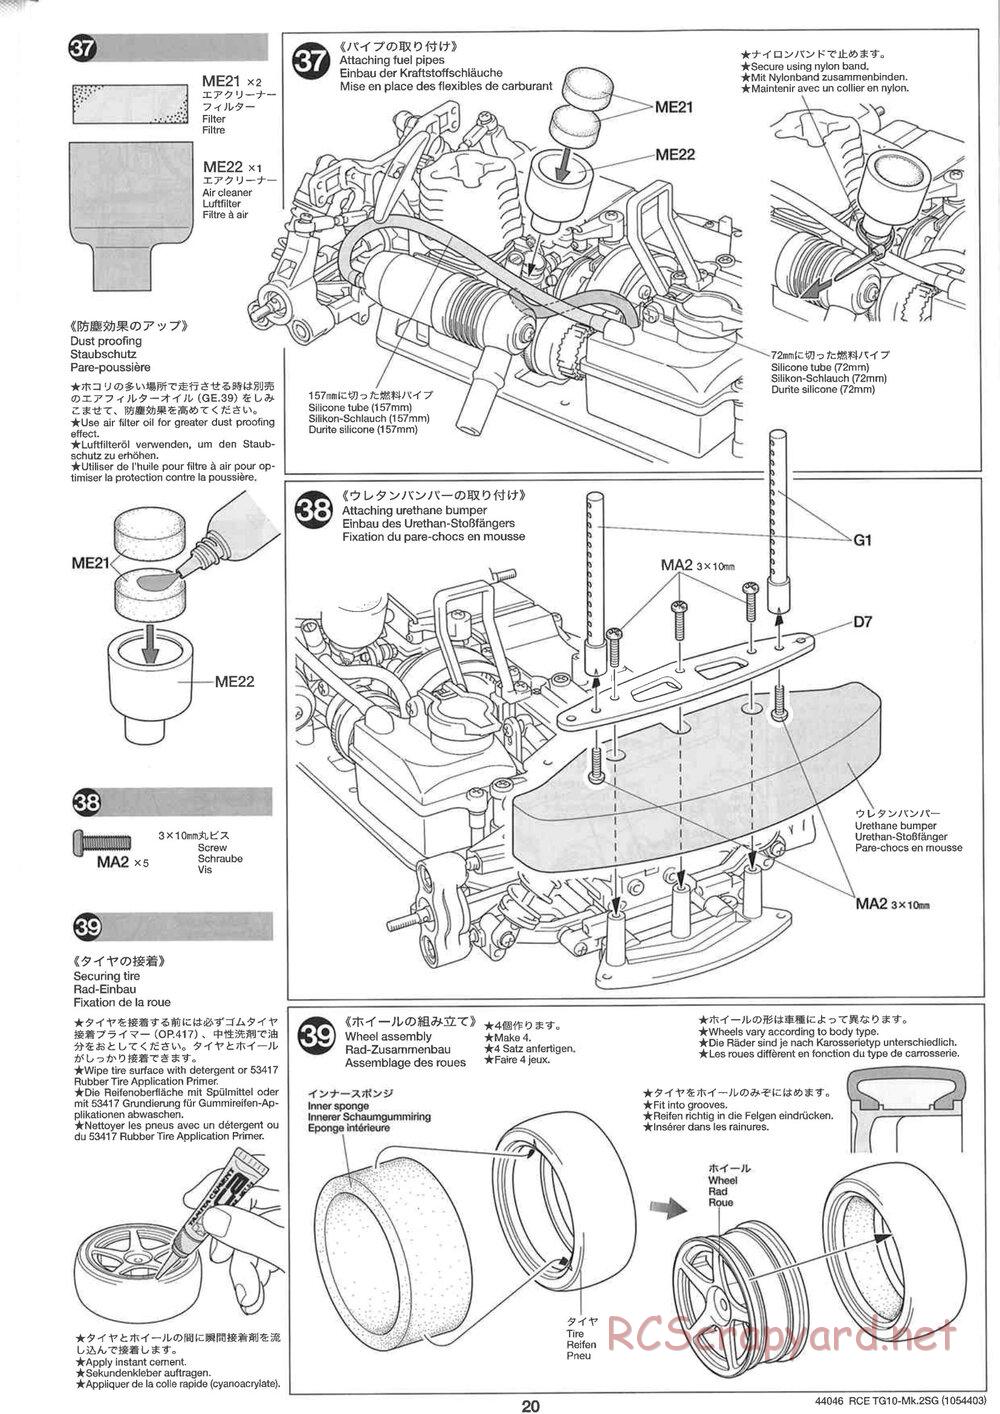 Tamiya - TG10 Mk.2SG Chassis - Manual - Page 20